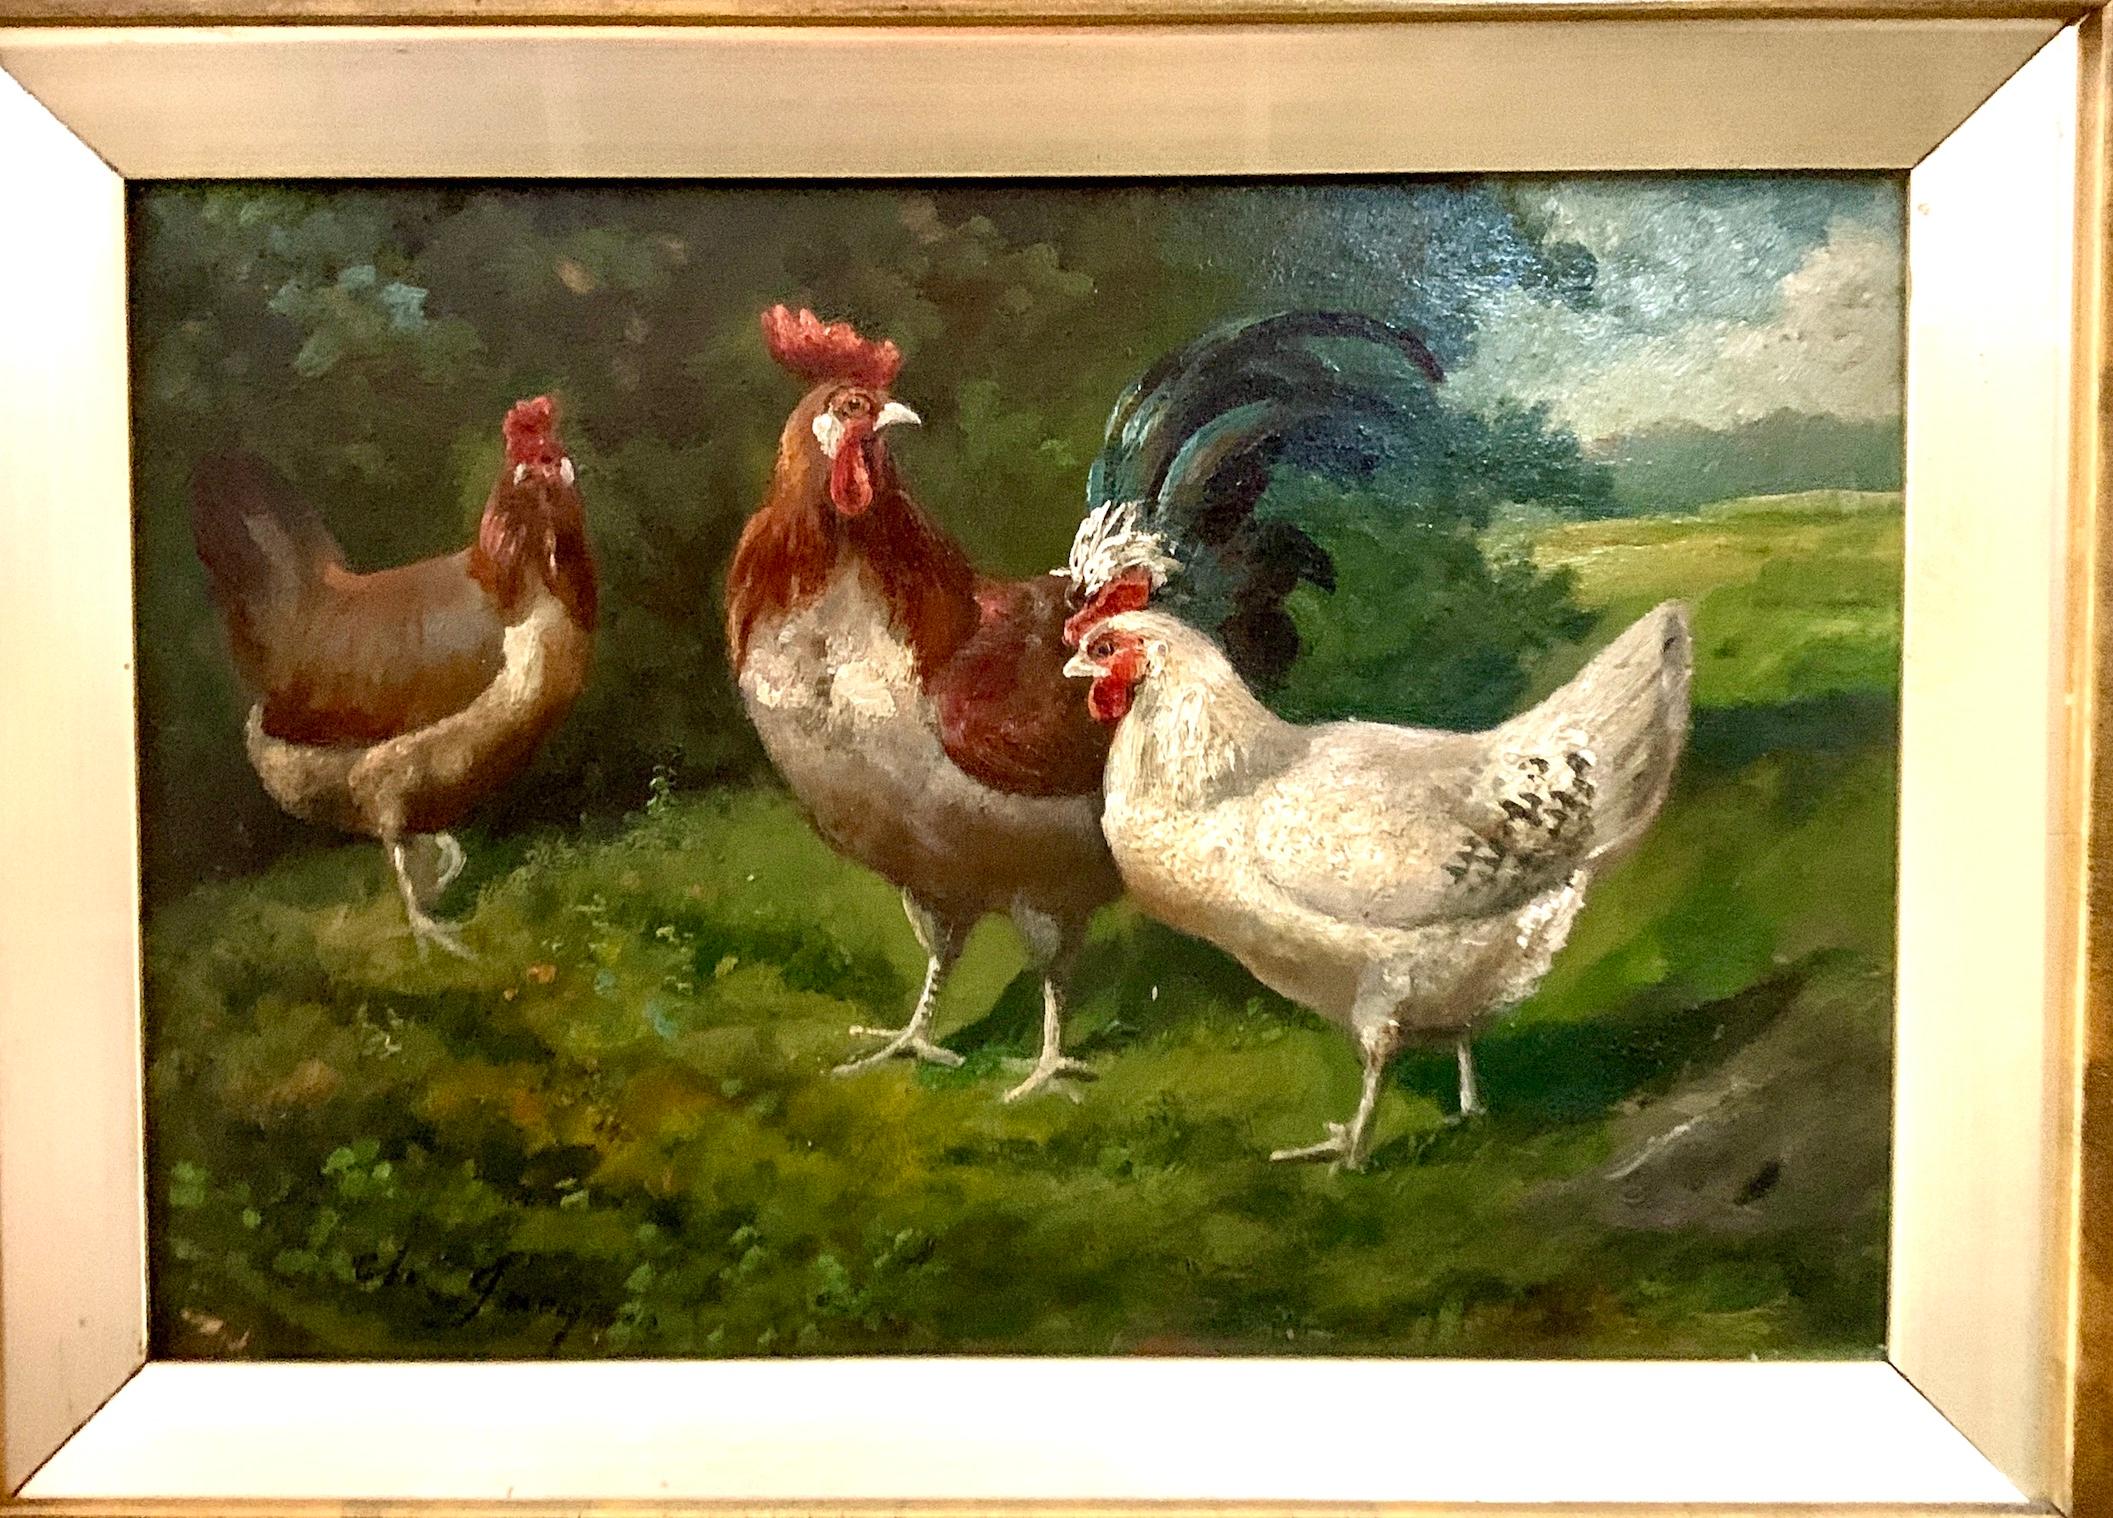 Französische Hühner aus dem 19. Jahrhundert in einer Landschaft – Painting von Charles-Emile Jacque